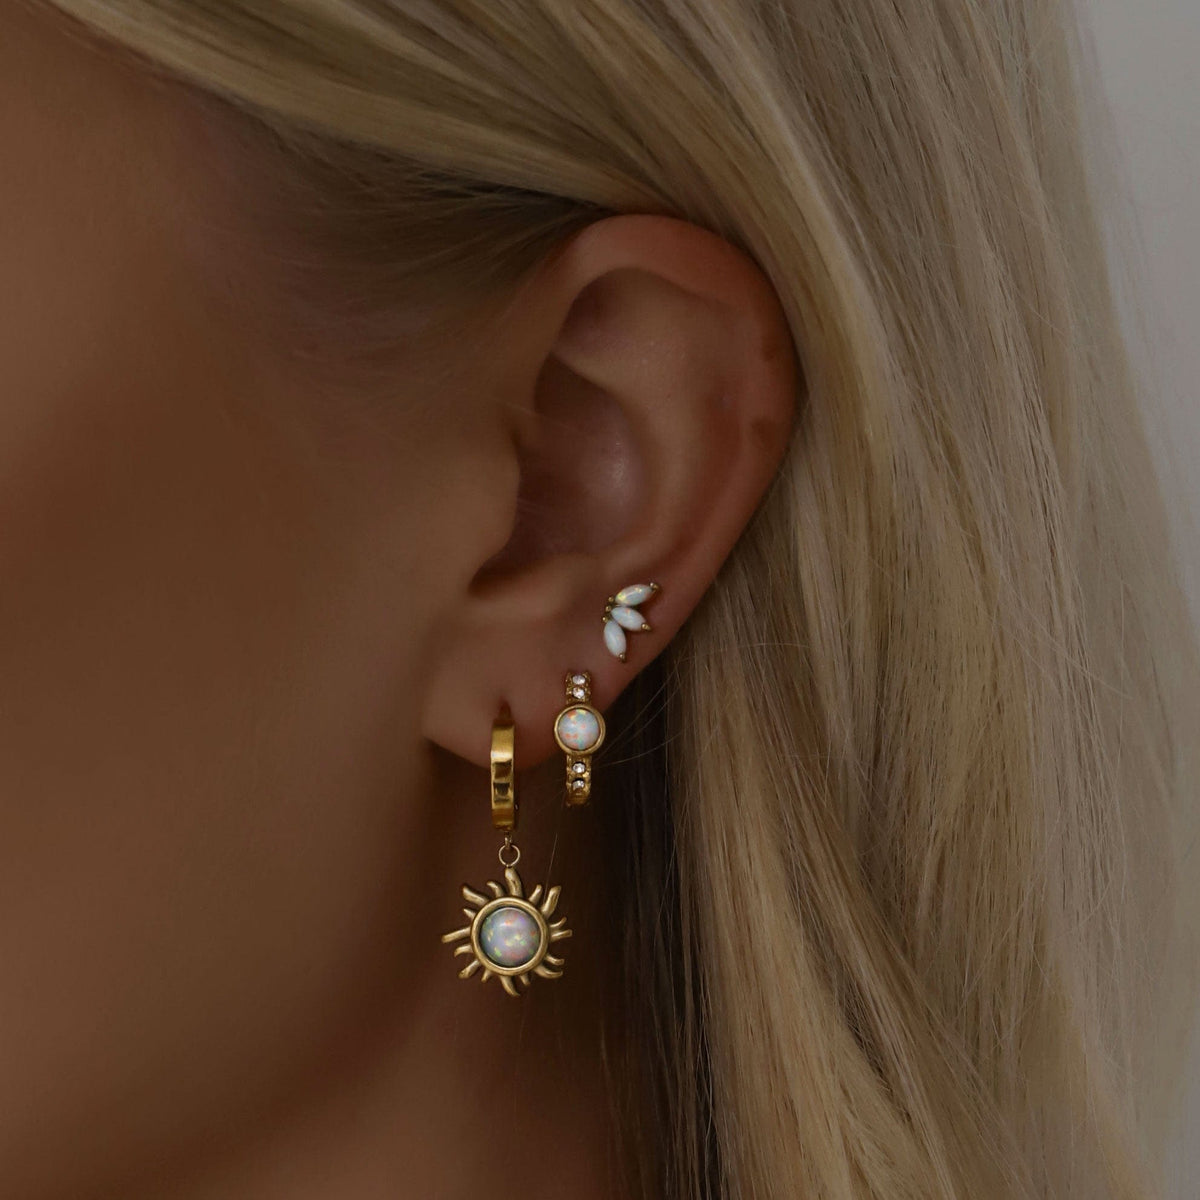 BohoMoon Stainless Steel Kiara Opal Hoop Earrings Gold